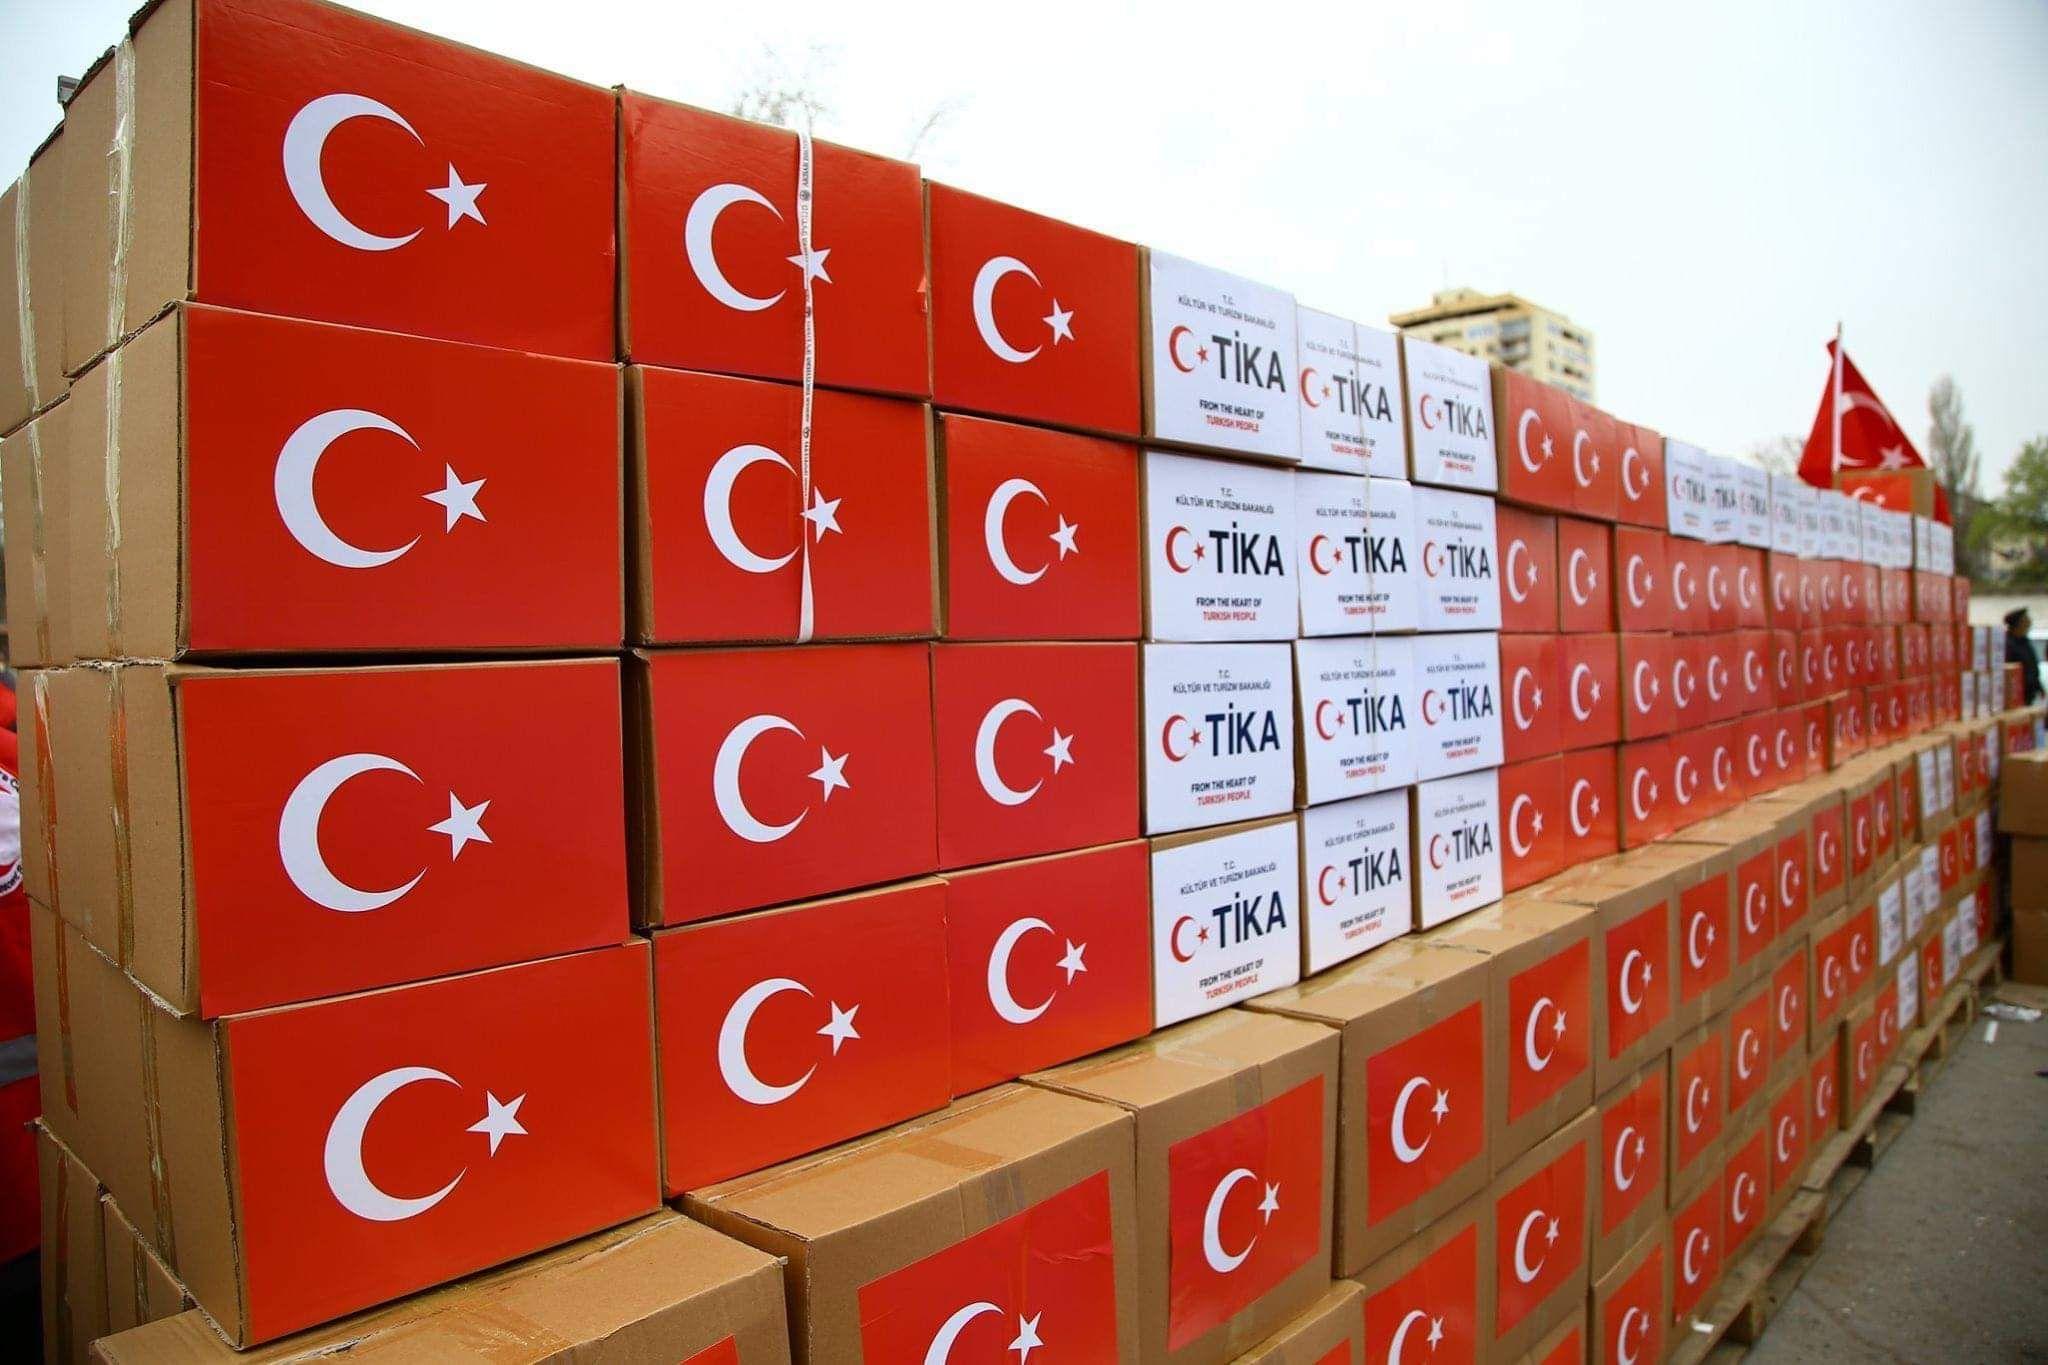 Turkiya toshqinlardan jabr ko’rgan afg‘onistonliklarga 24 tonna insonparvarlik yordamini jo‘natdi